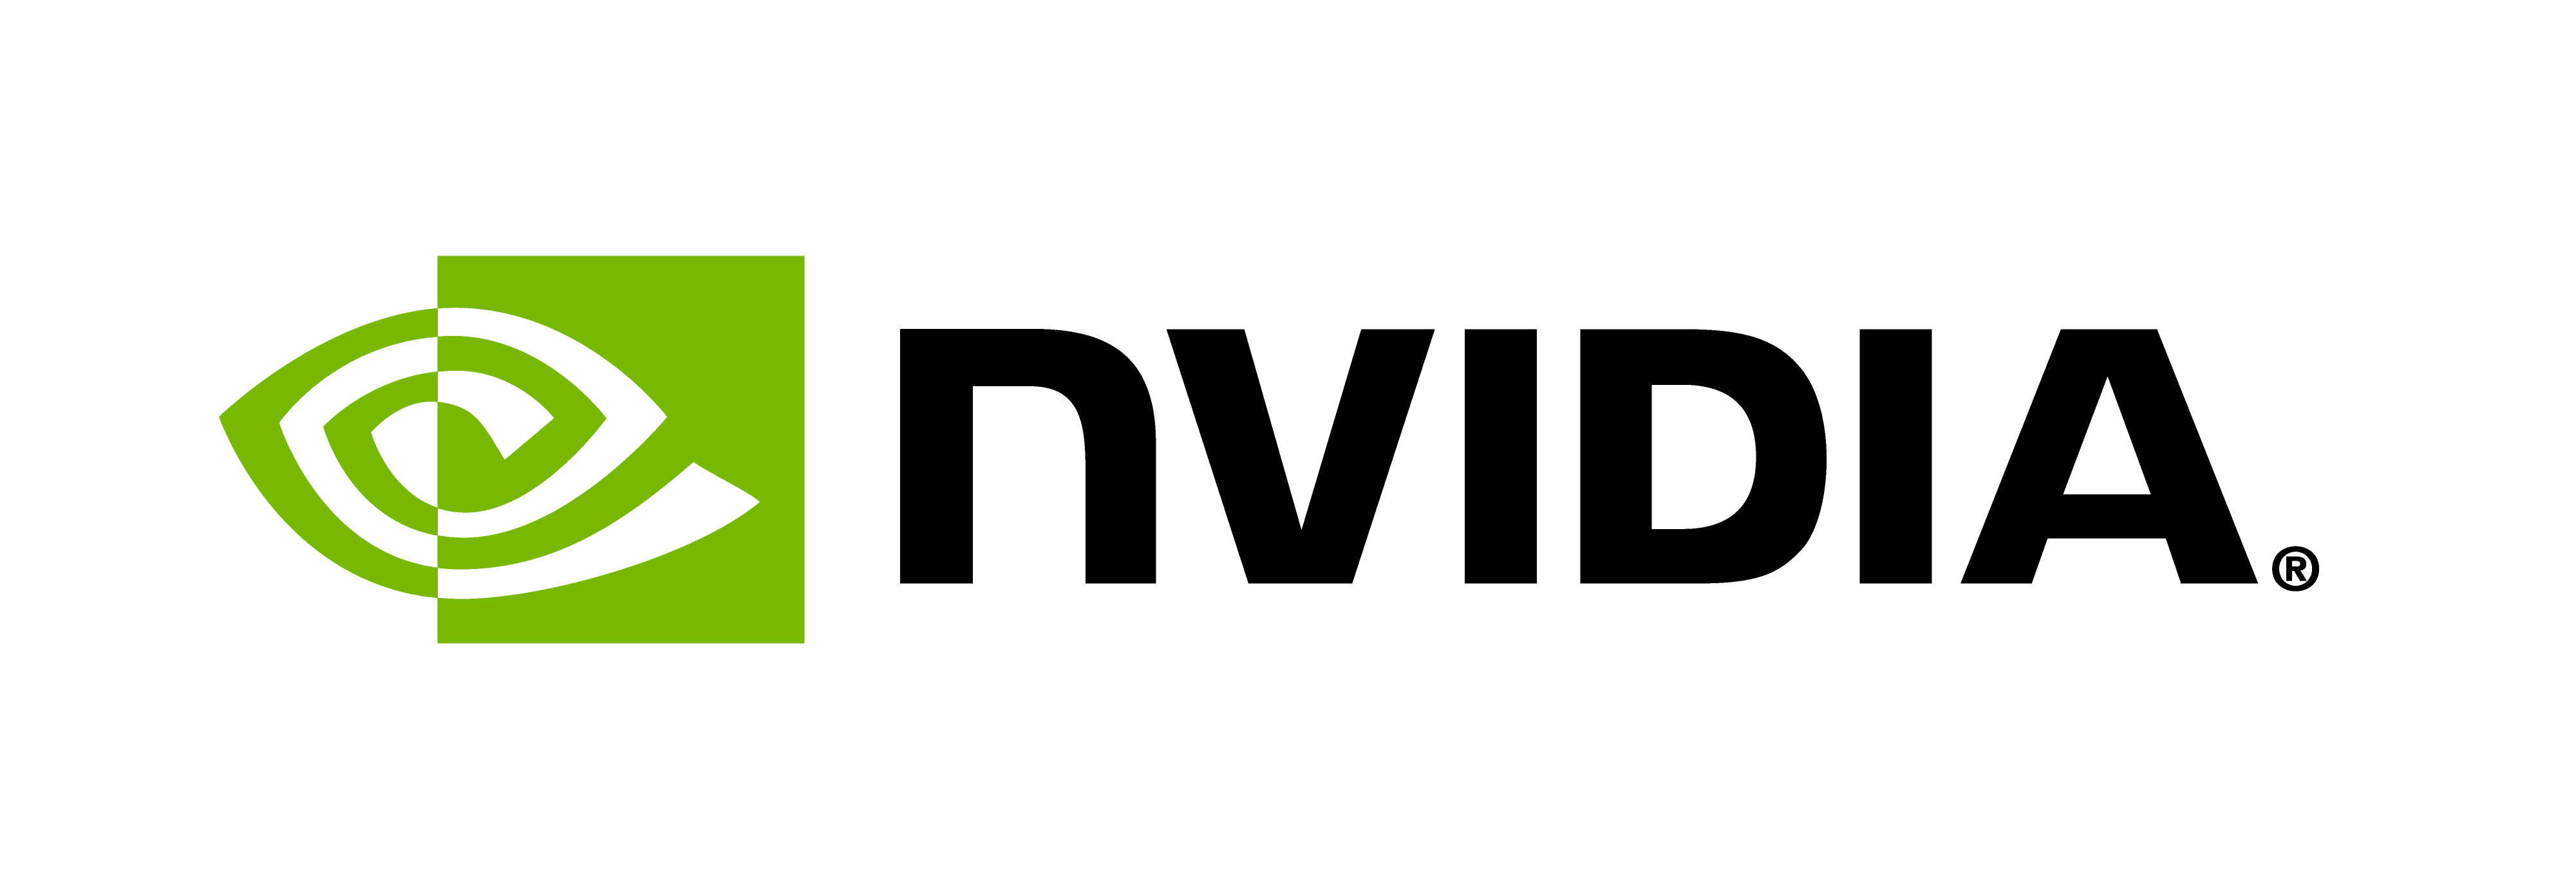 NVIDIA-Logo-H-ForScreen-ForLightBG